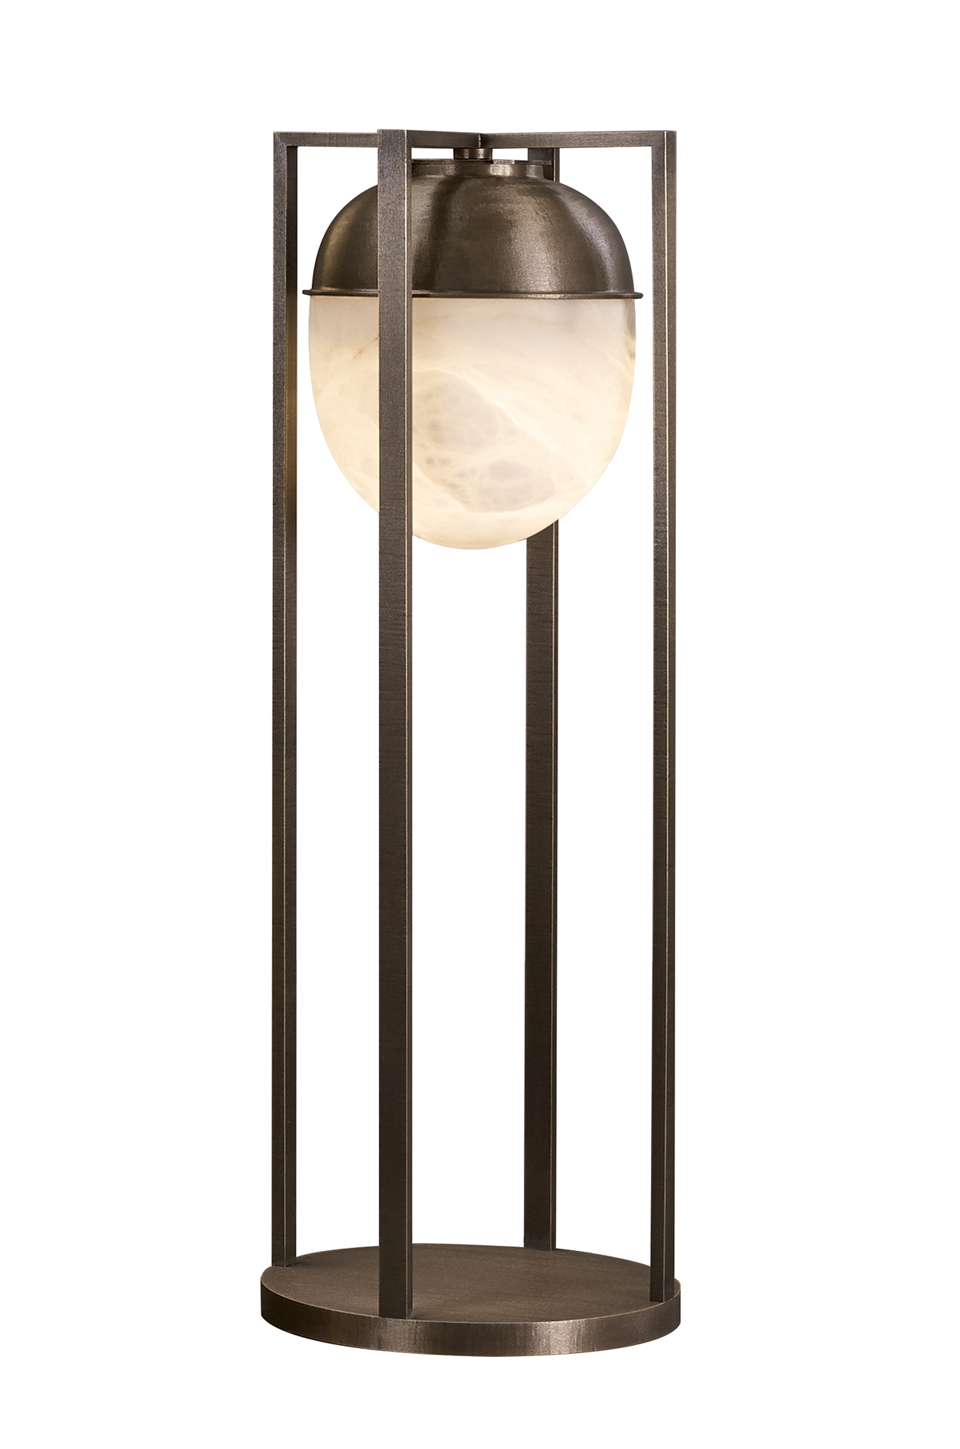 Jorinda è una lampada da terra a LED con struttura in bronzo e paralume in alabastro, del catalogo di Promemoria | Promemoria